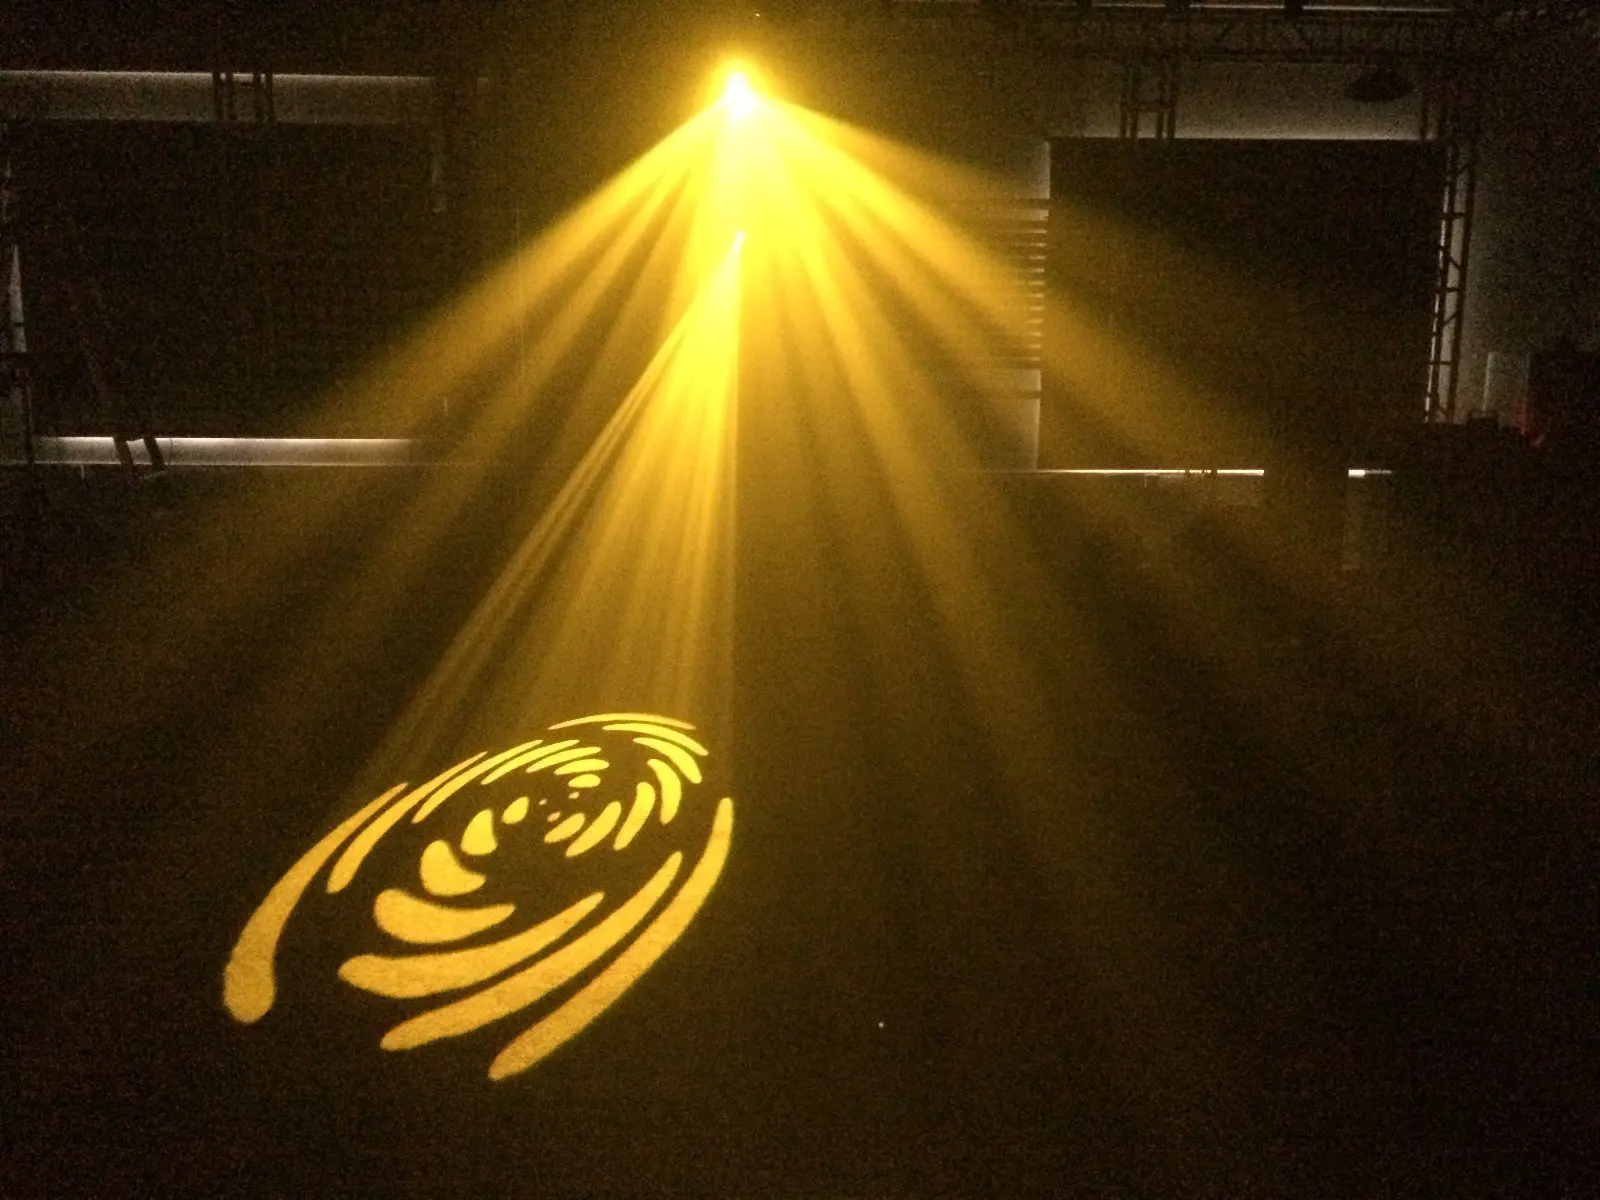 Marslite power led effect light for disco